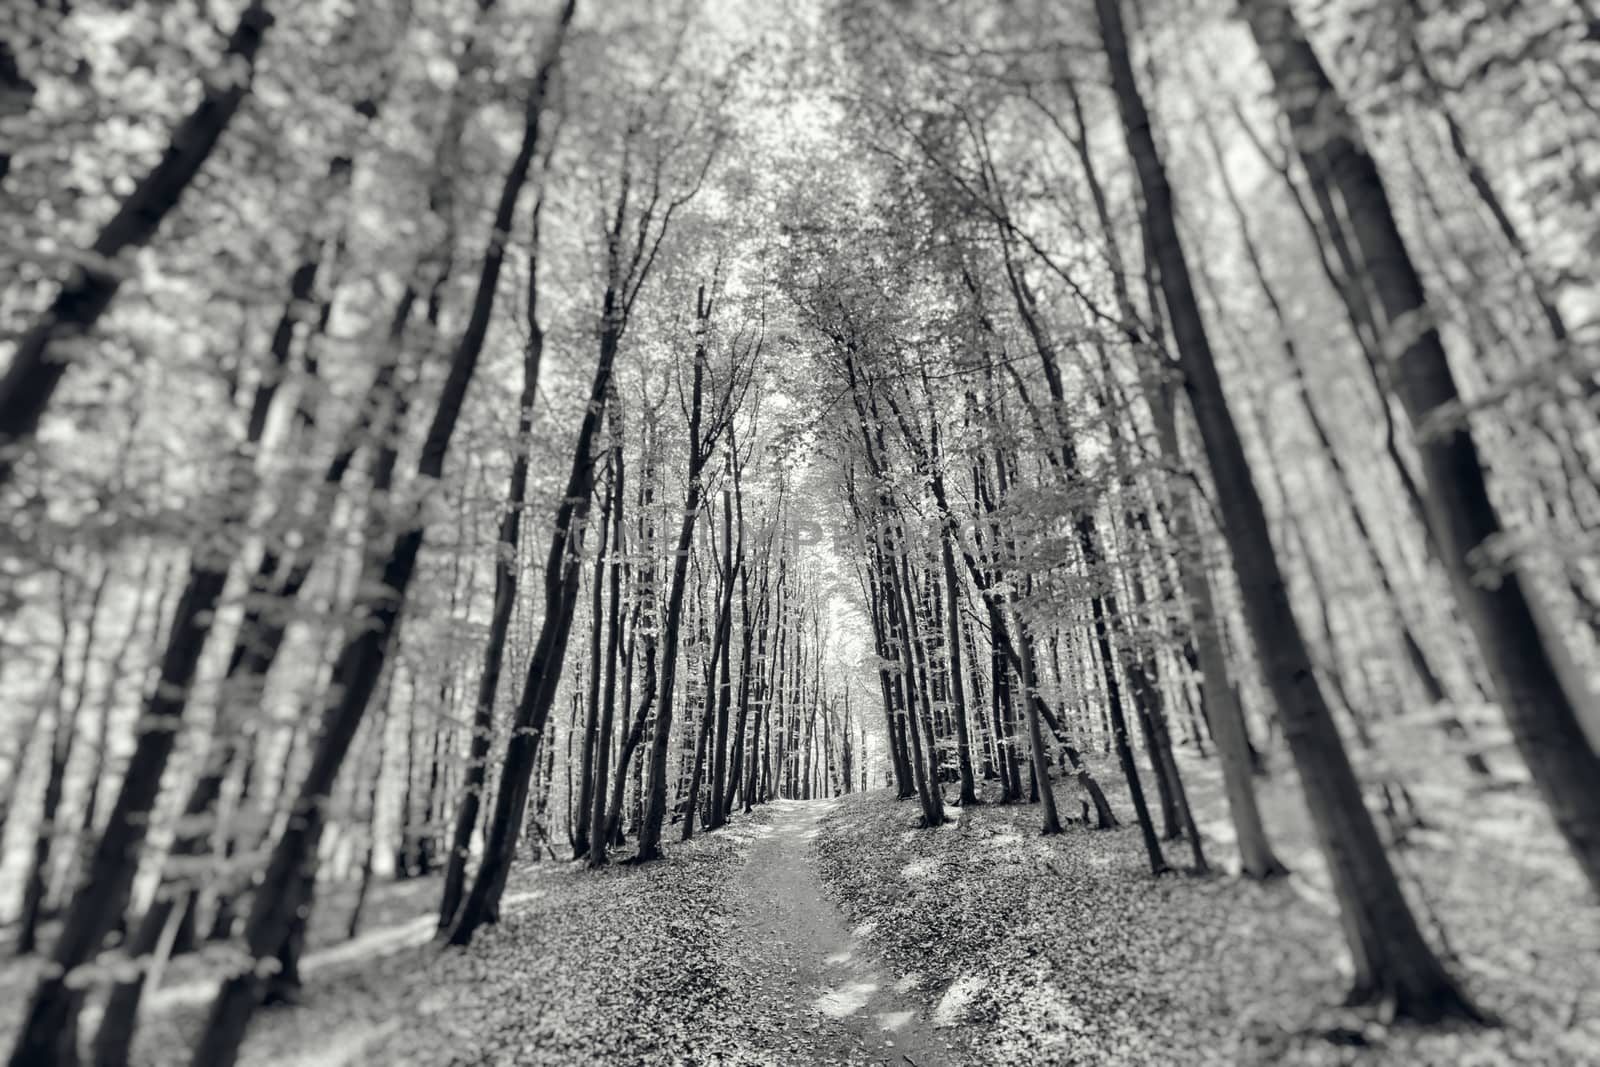 The hidden forest by patricklienin